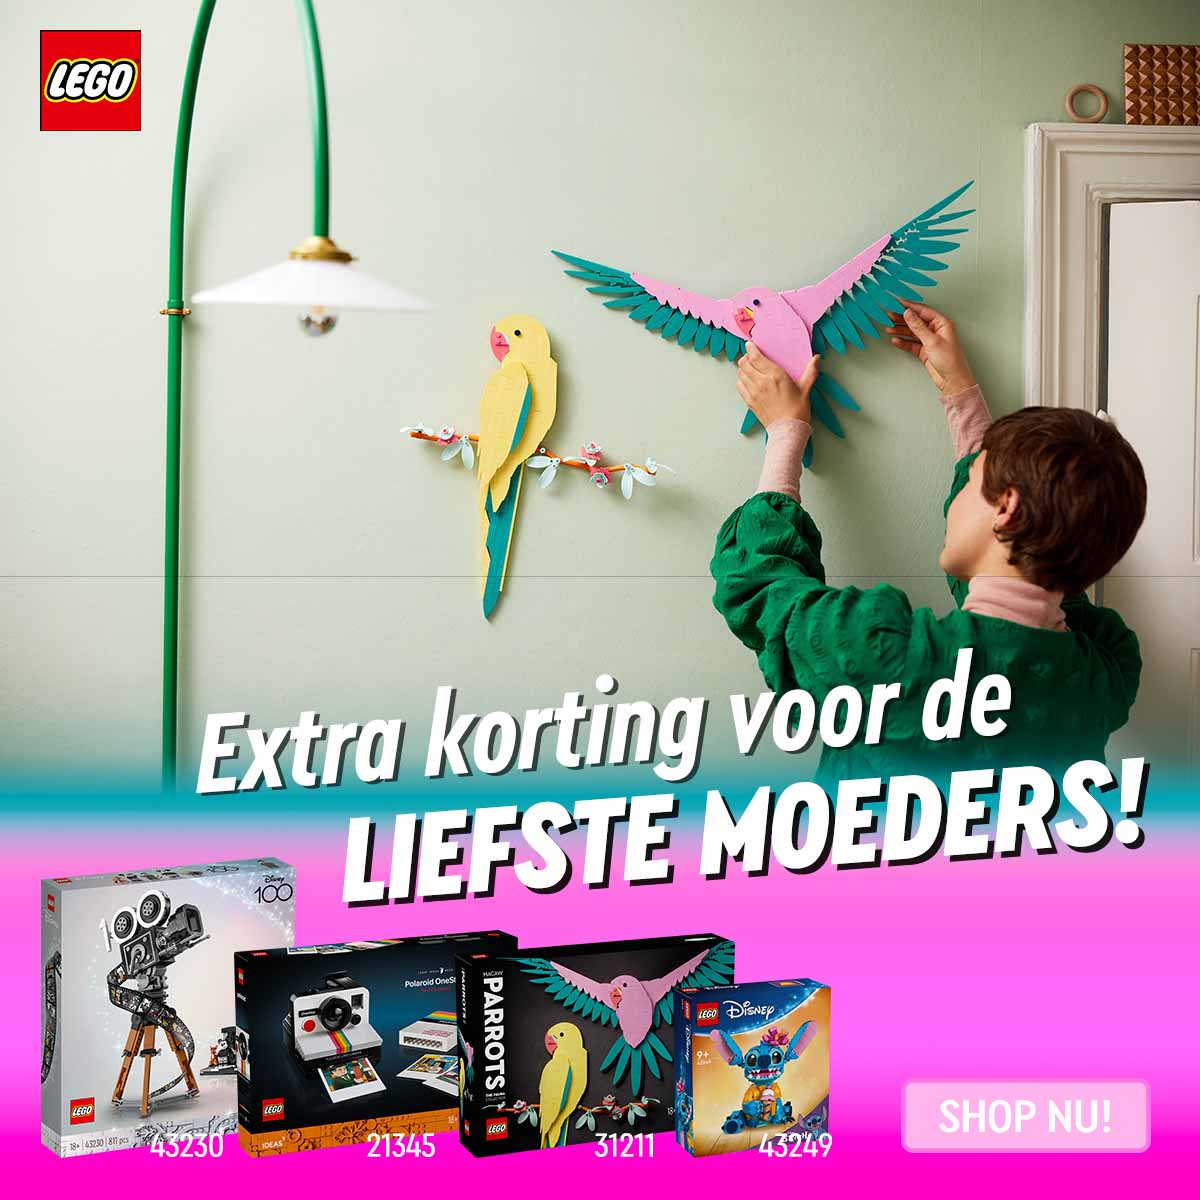 LEGO Moederdag actie van Goodbricks